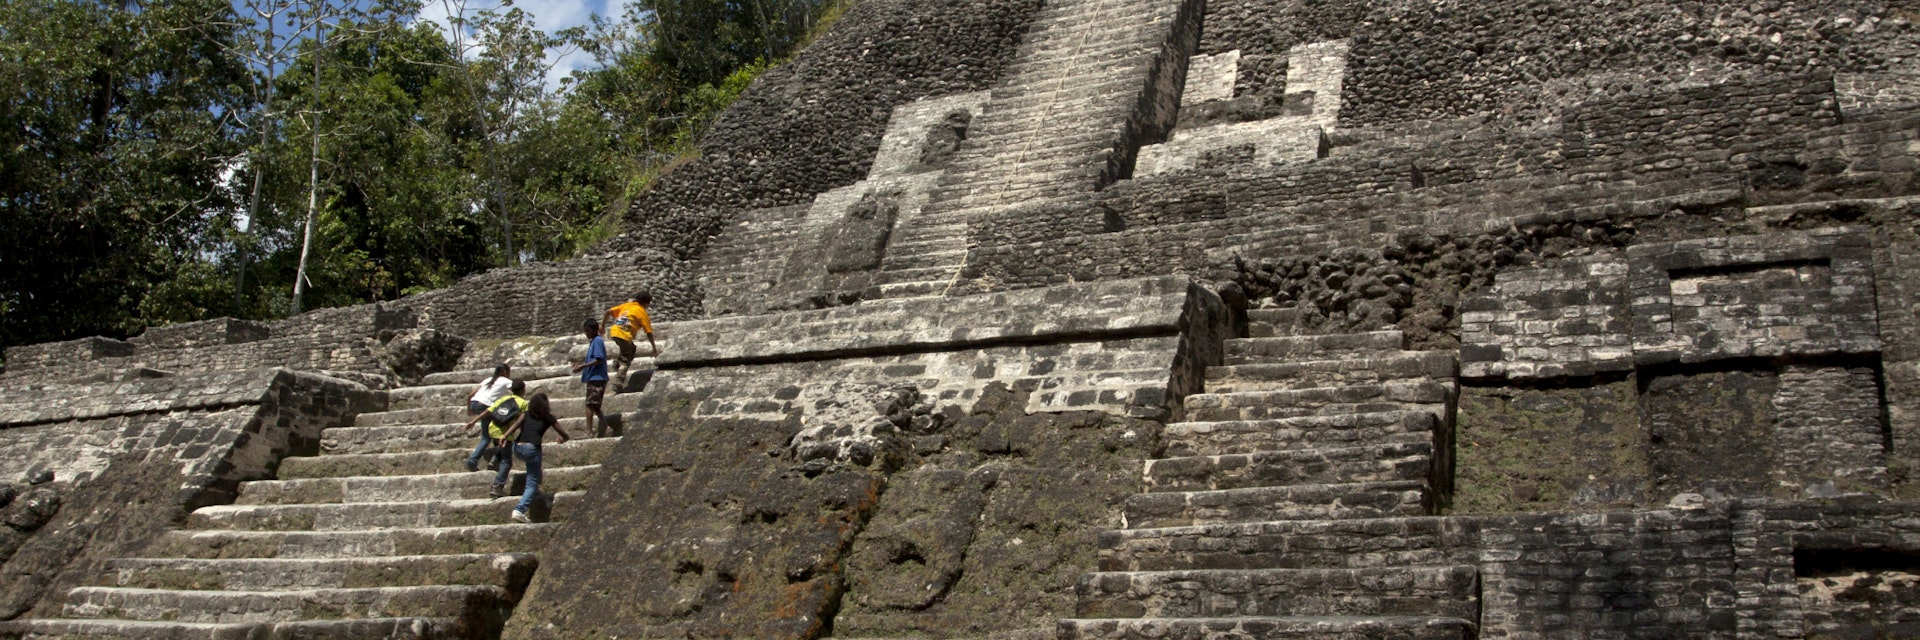 Lamanai Mayan ruins.